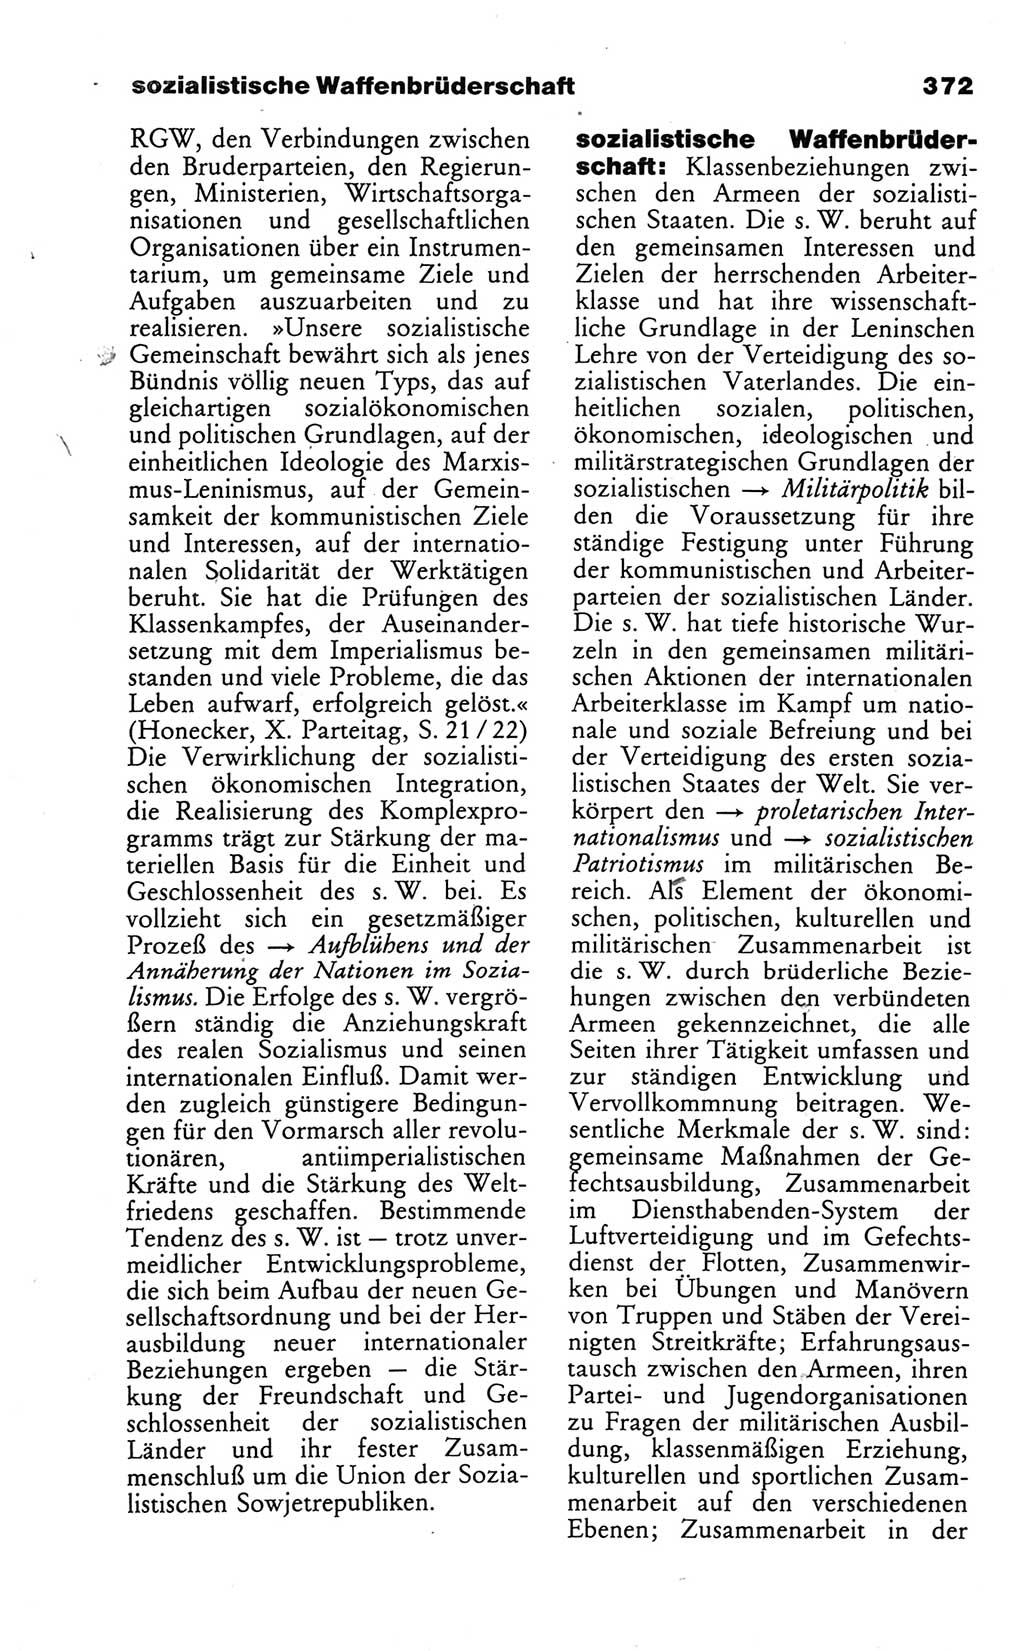 Wörterbuch des wissenschaftlichen Kommunismus [Deutsche Demokratische Republik (DDR)] 1986, Seite 372 (Wb. wiss. Komm. DDR 1986, S. 372)